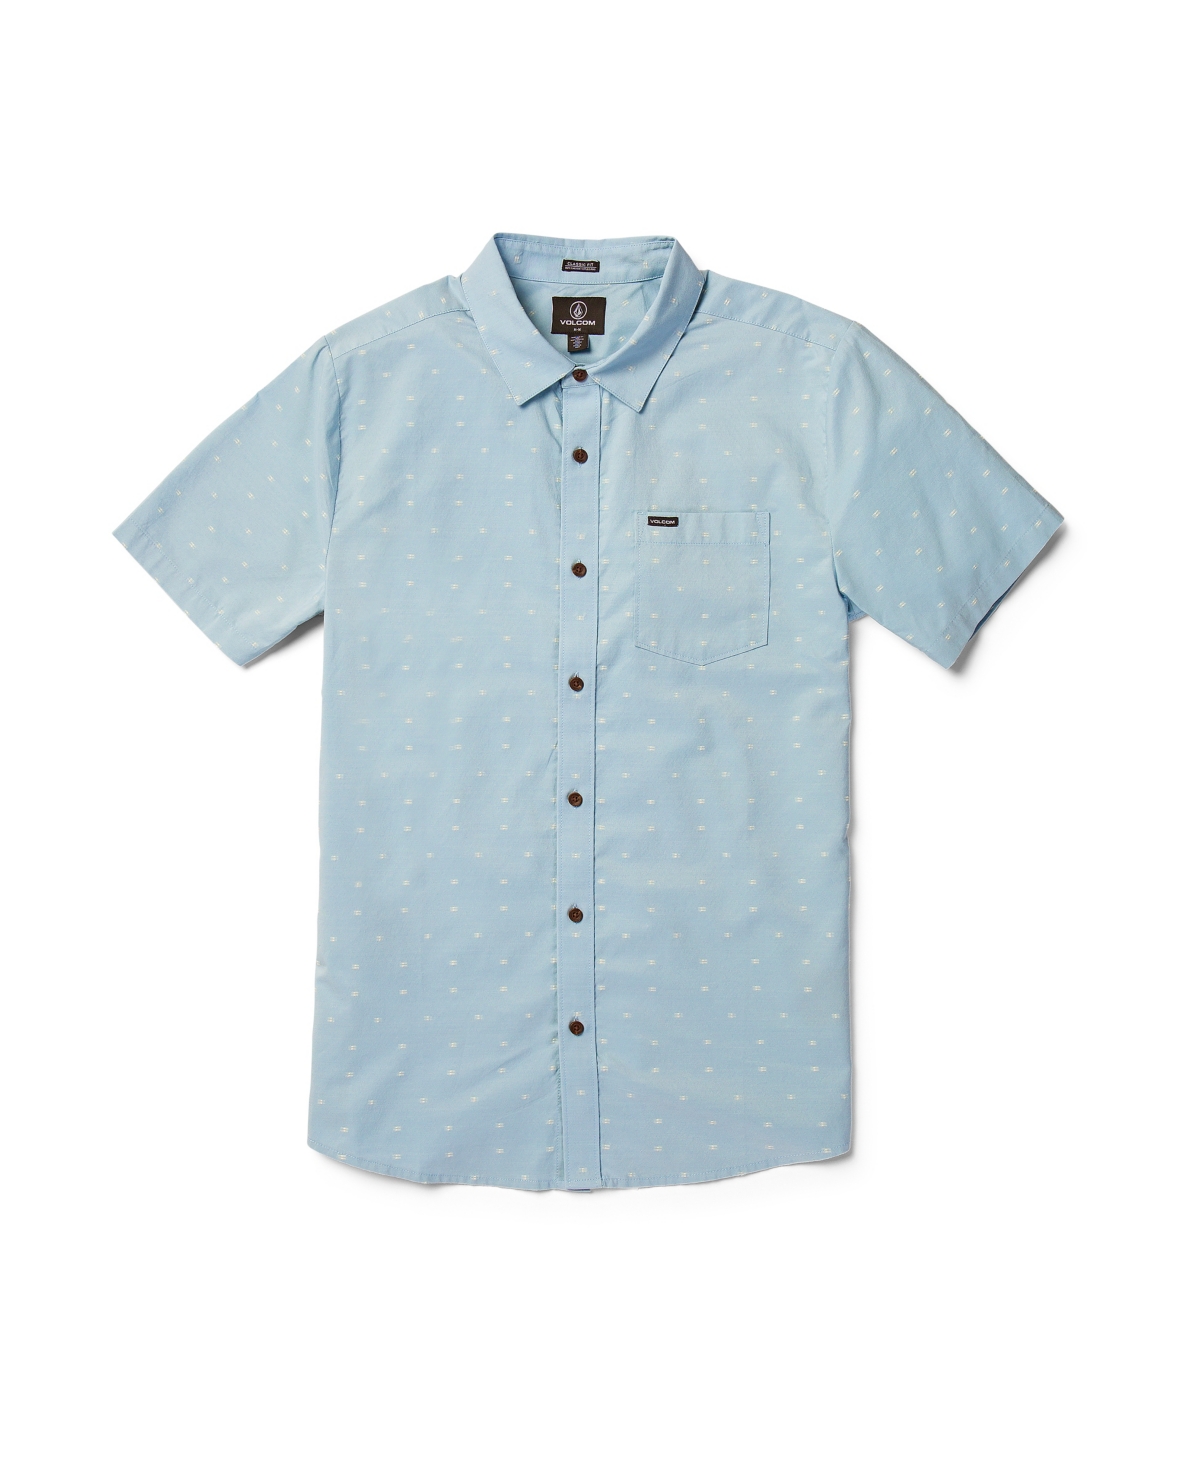 Men's Crownstone Short Sleeve Shirt - Celestial Blue